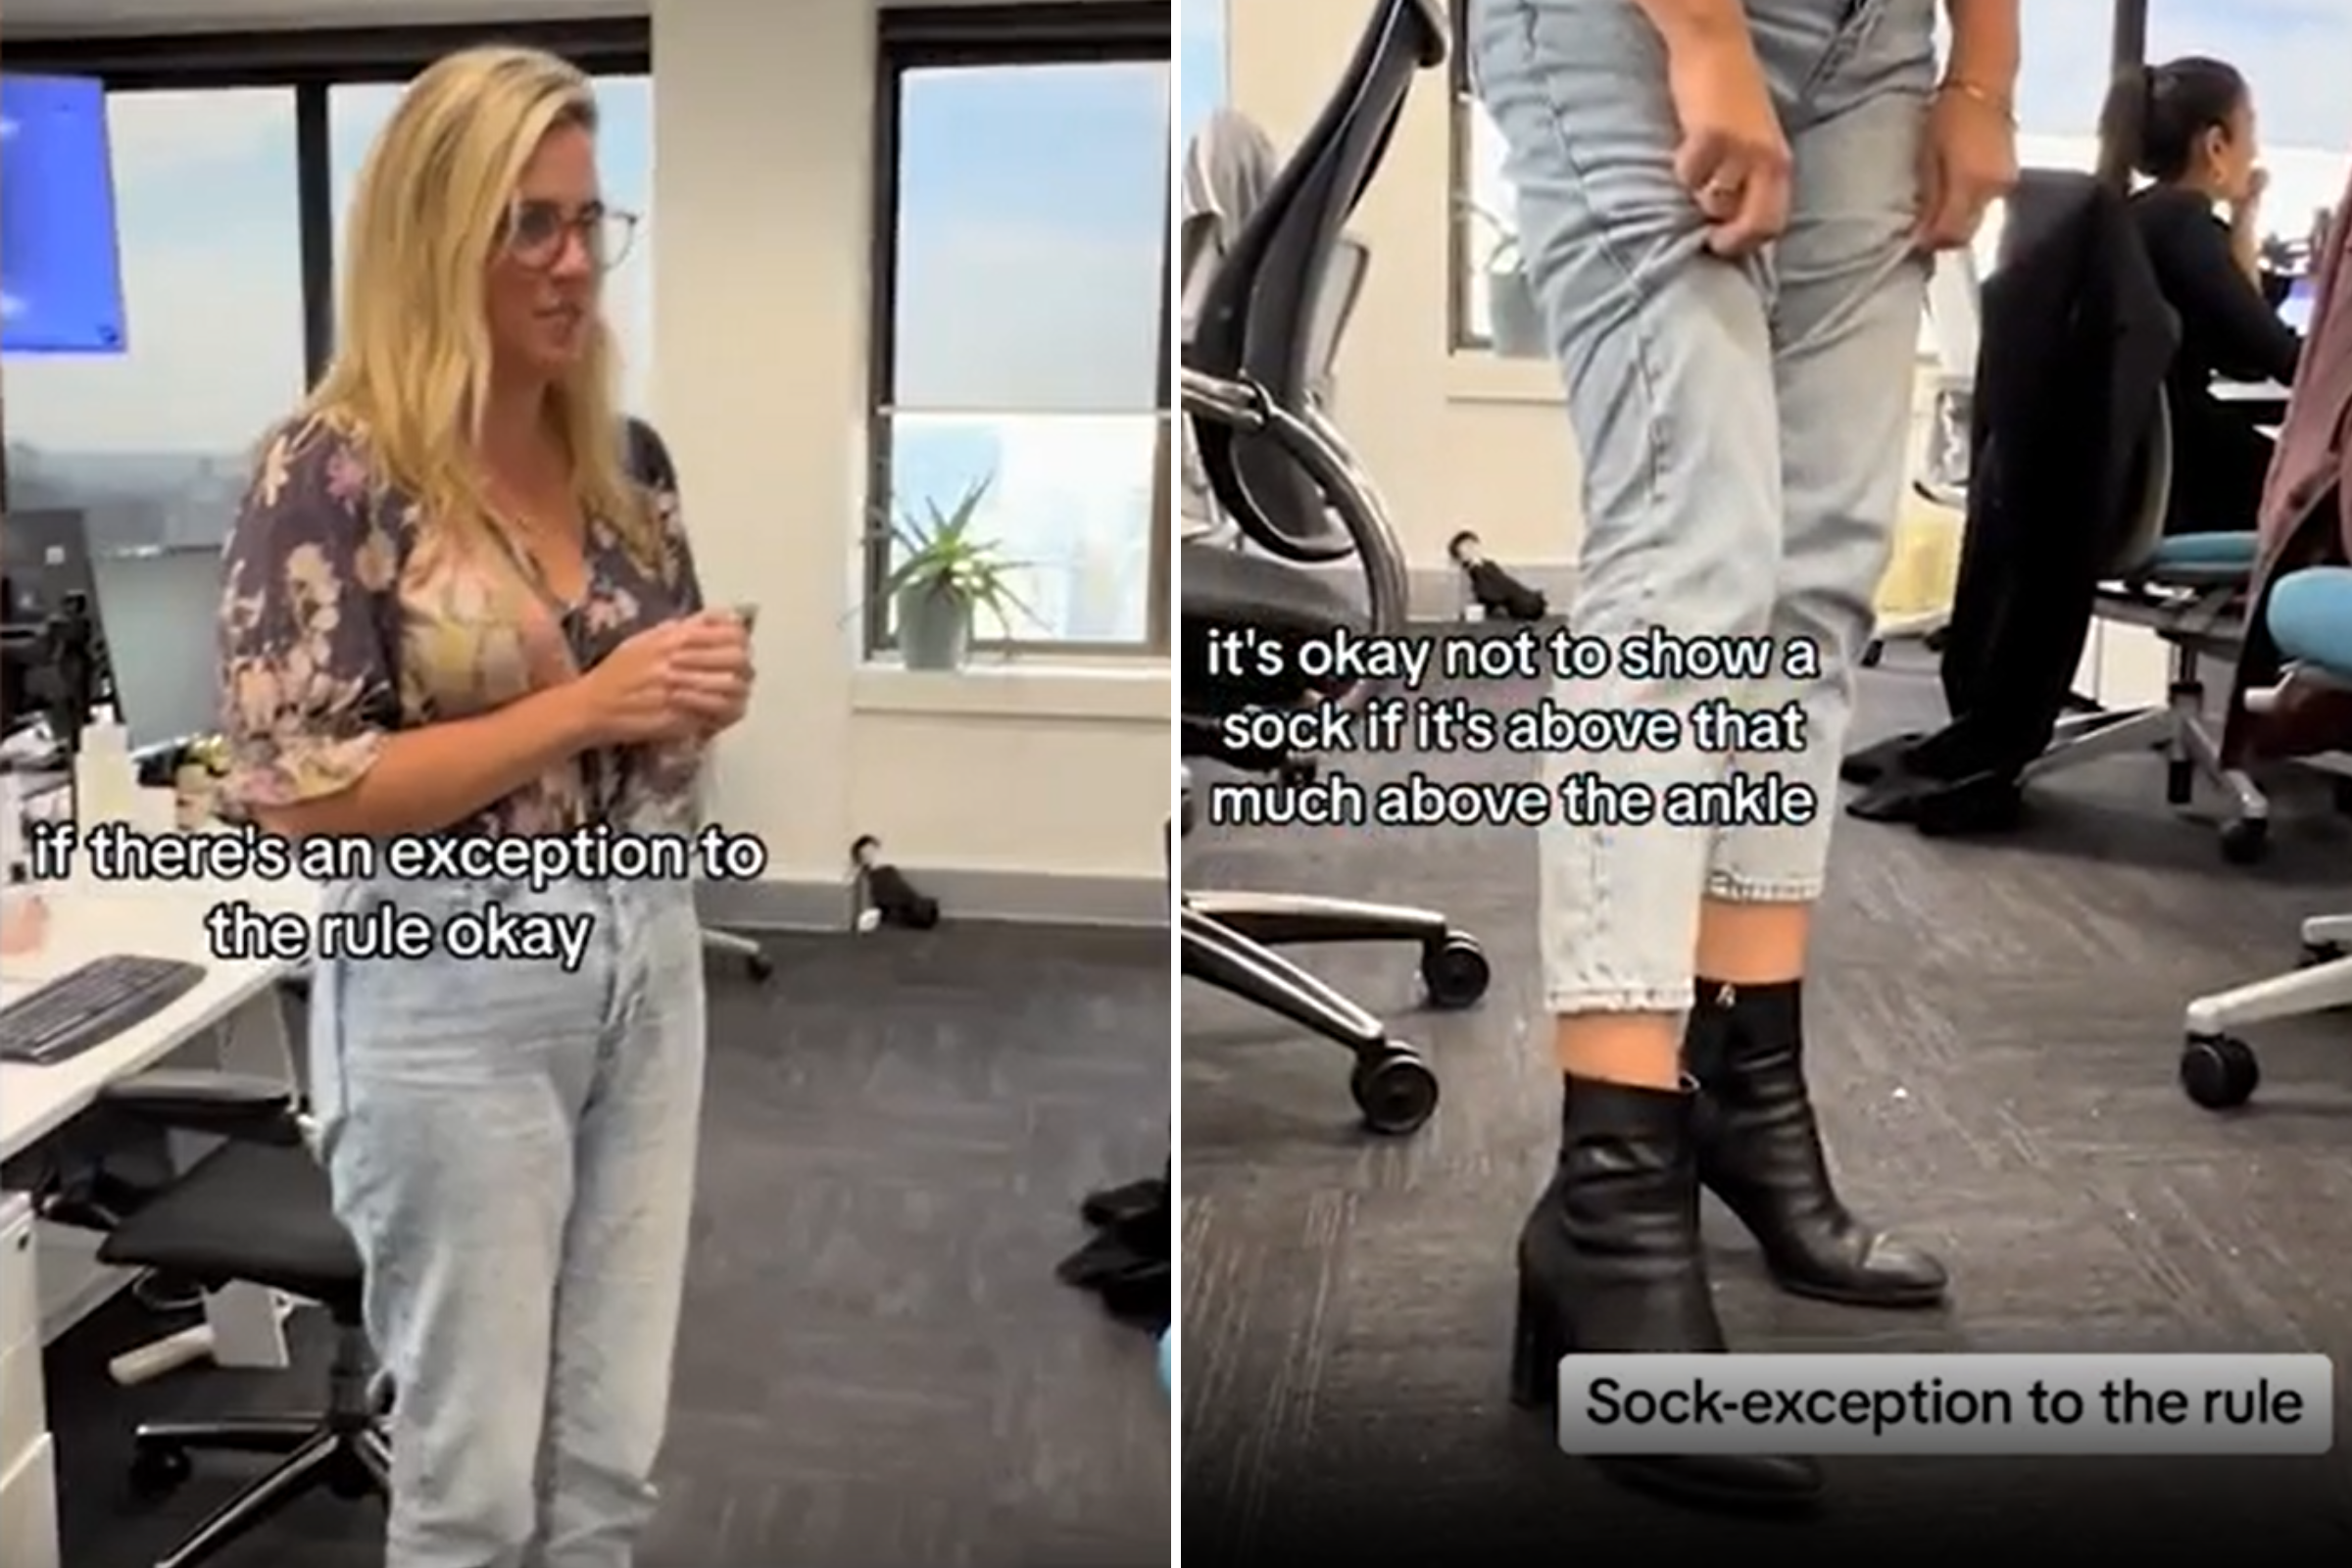 Watch Baffled Millennial Try to Understand Gen Z's Rules for Wearing Socks